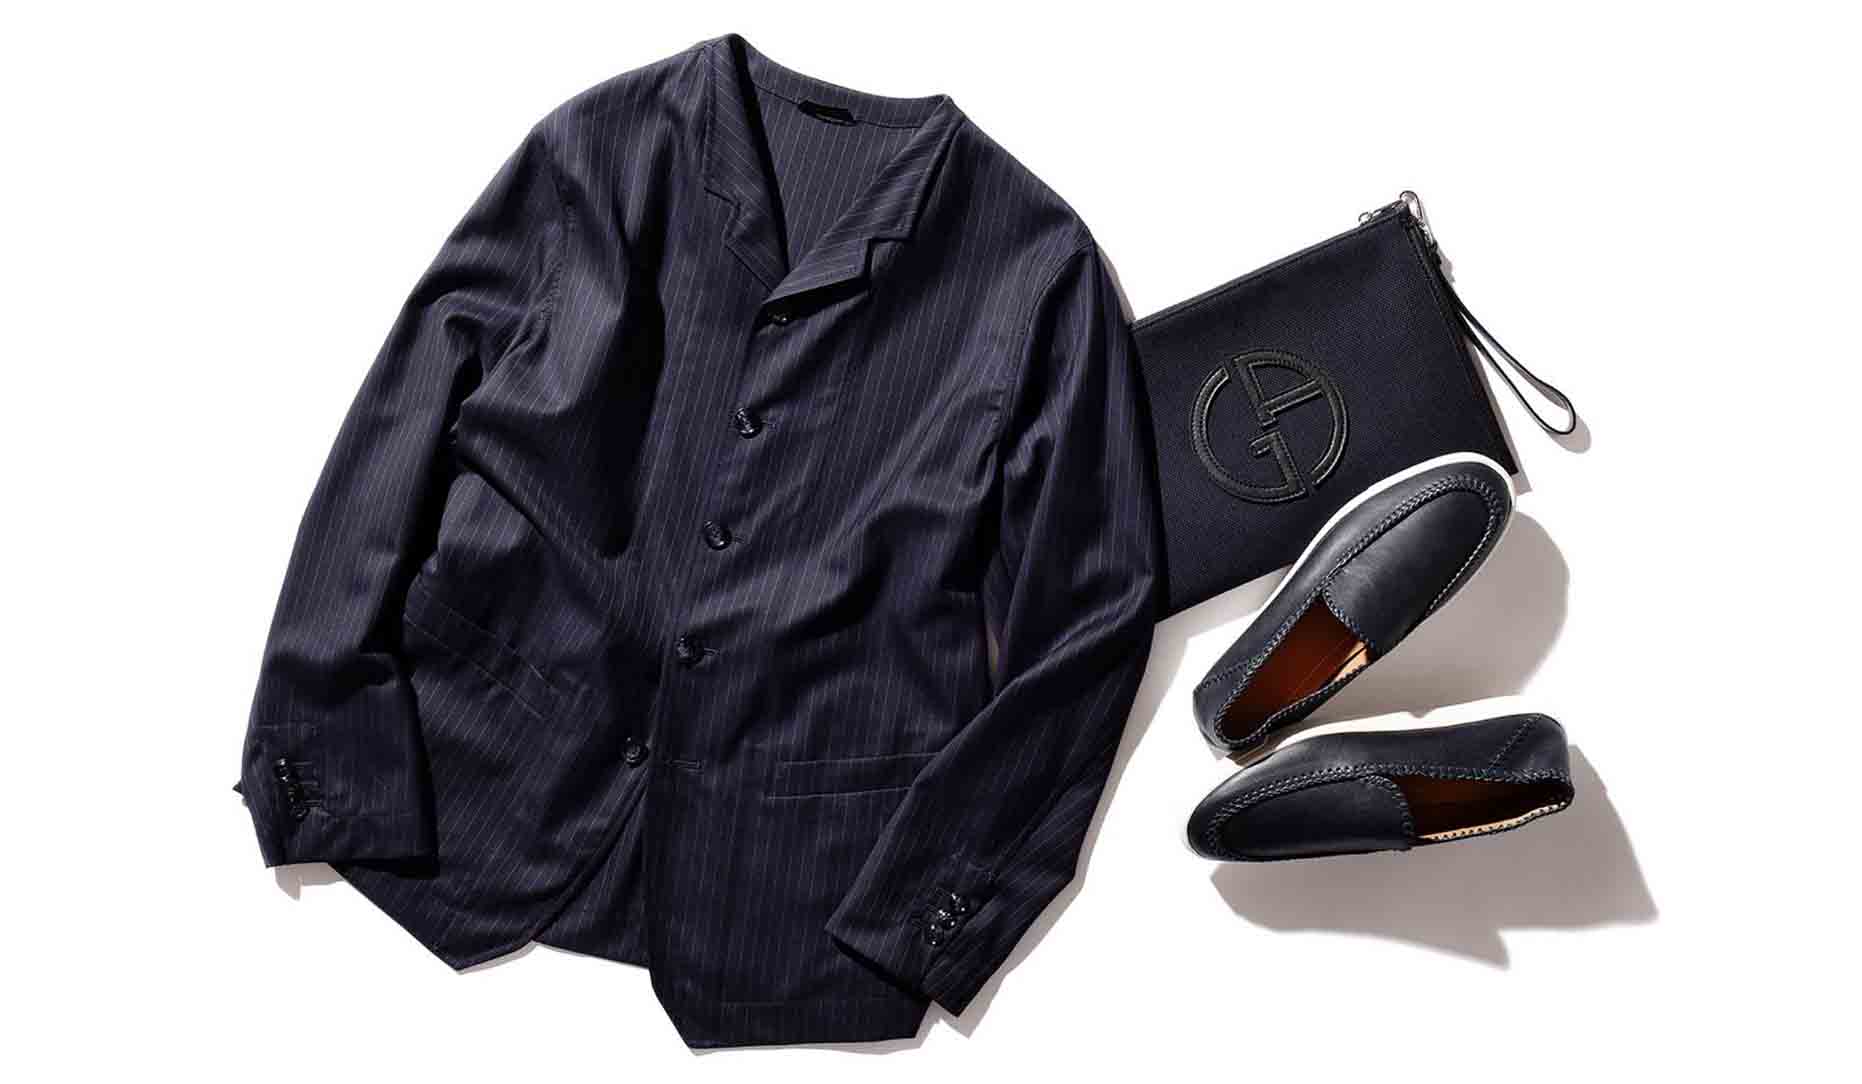 ジョルジオ アルマーニのジャケット、靴、鞄